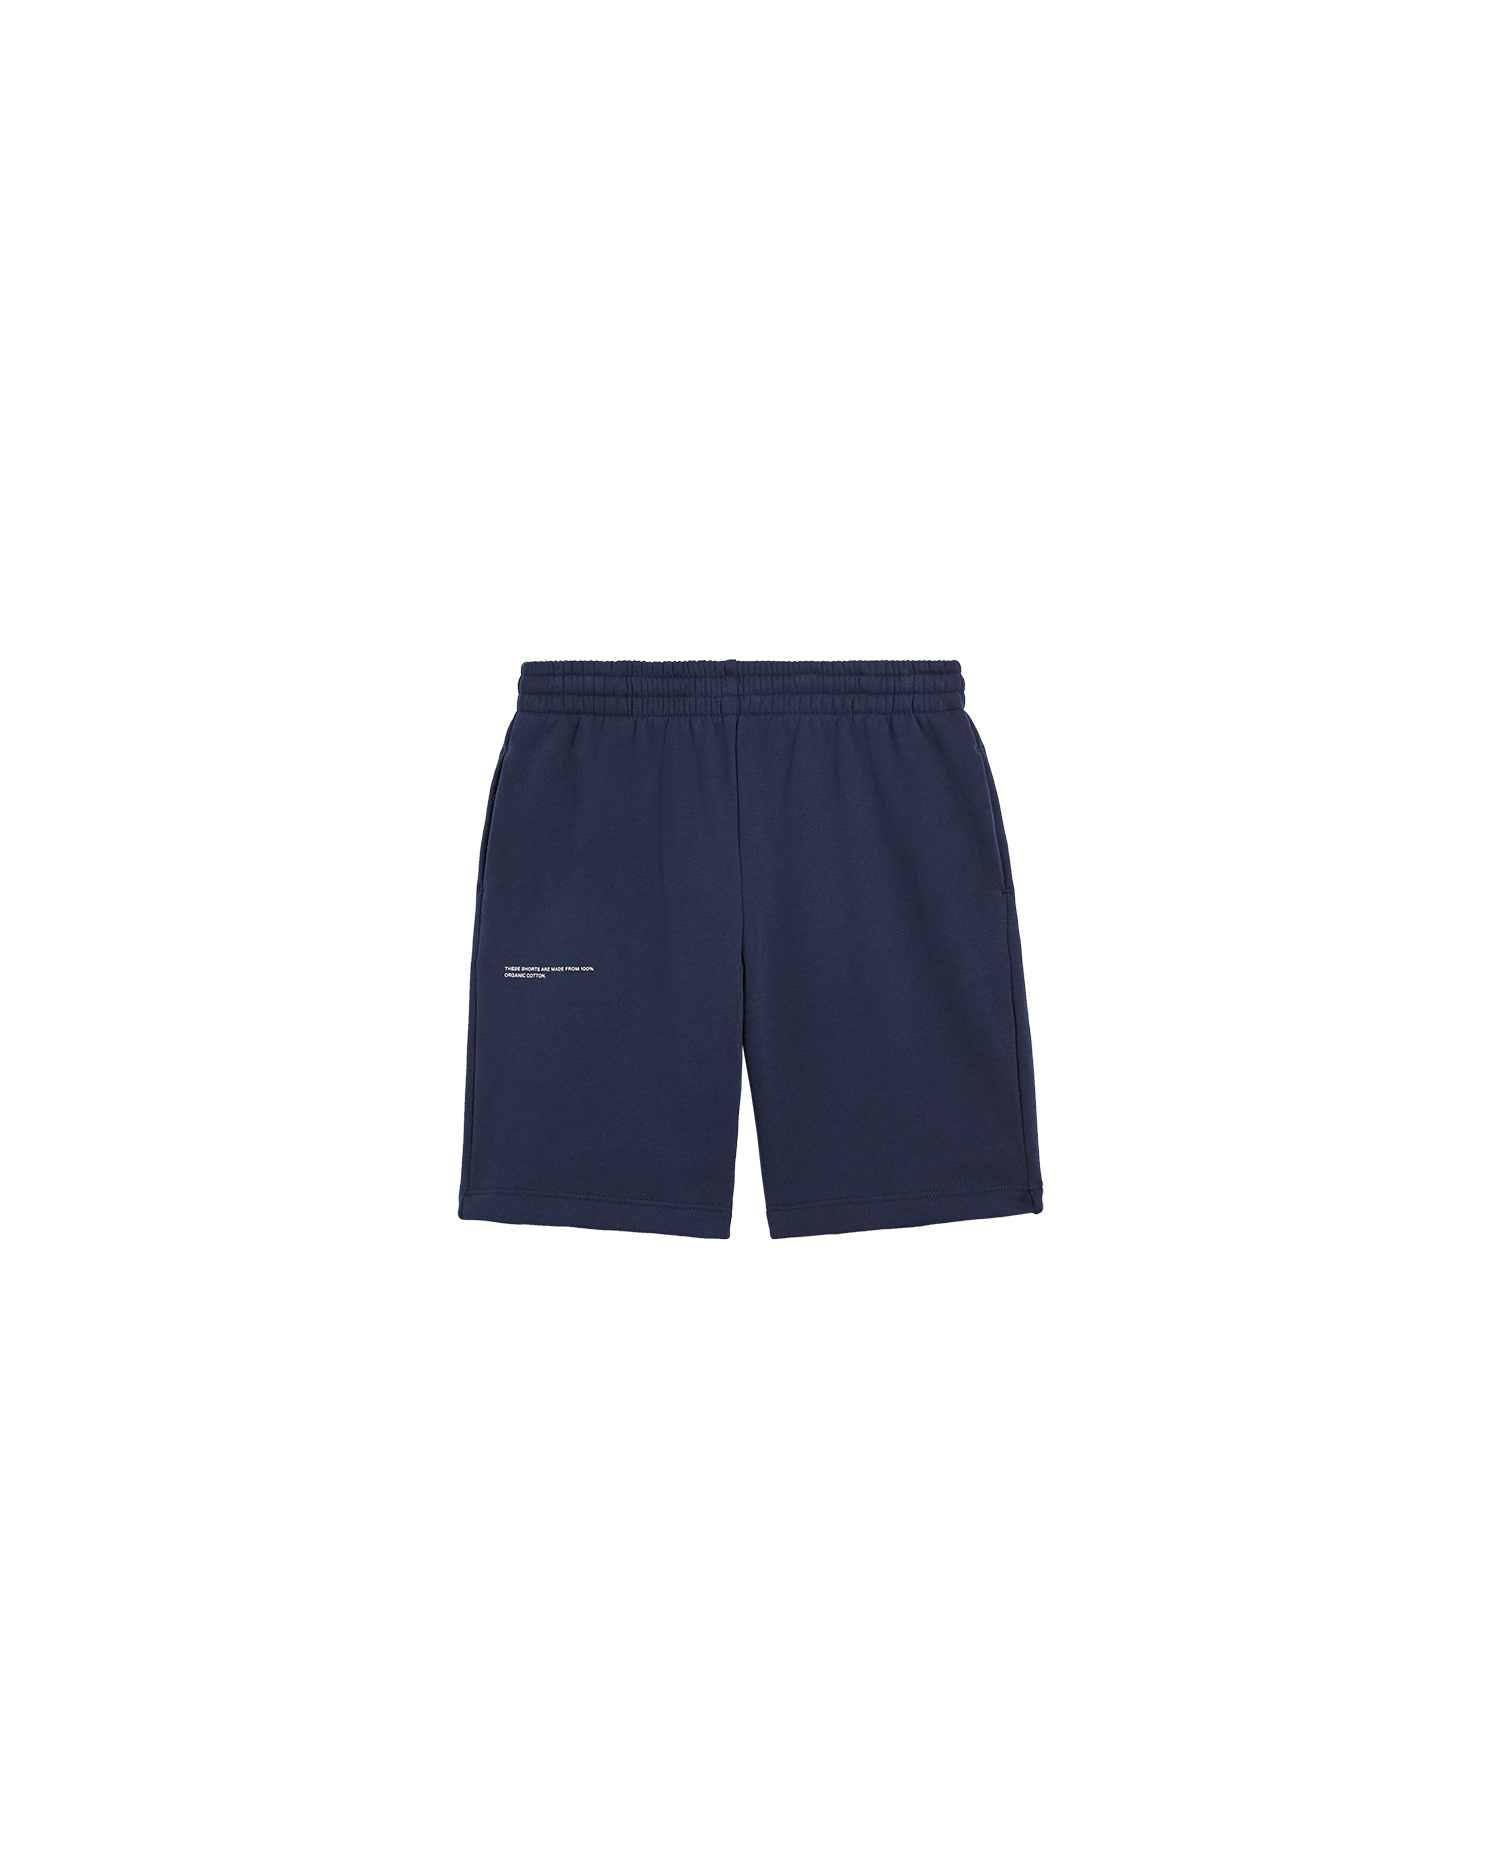 Kids 365 Long Shorts AW22—navy blue packshot-3